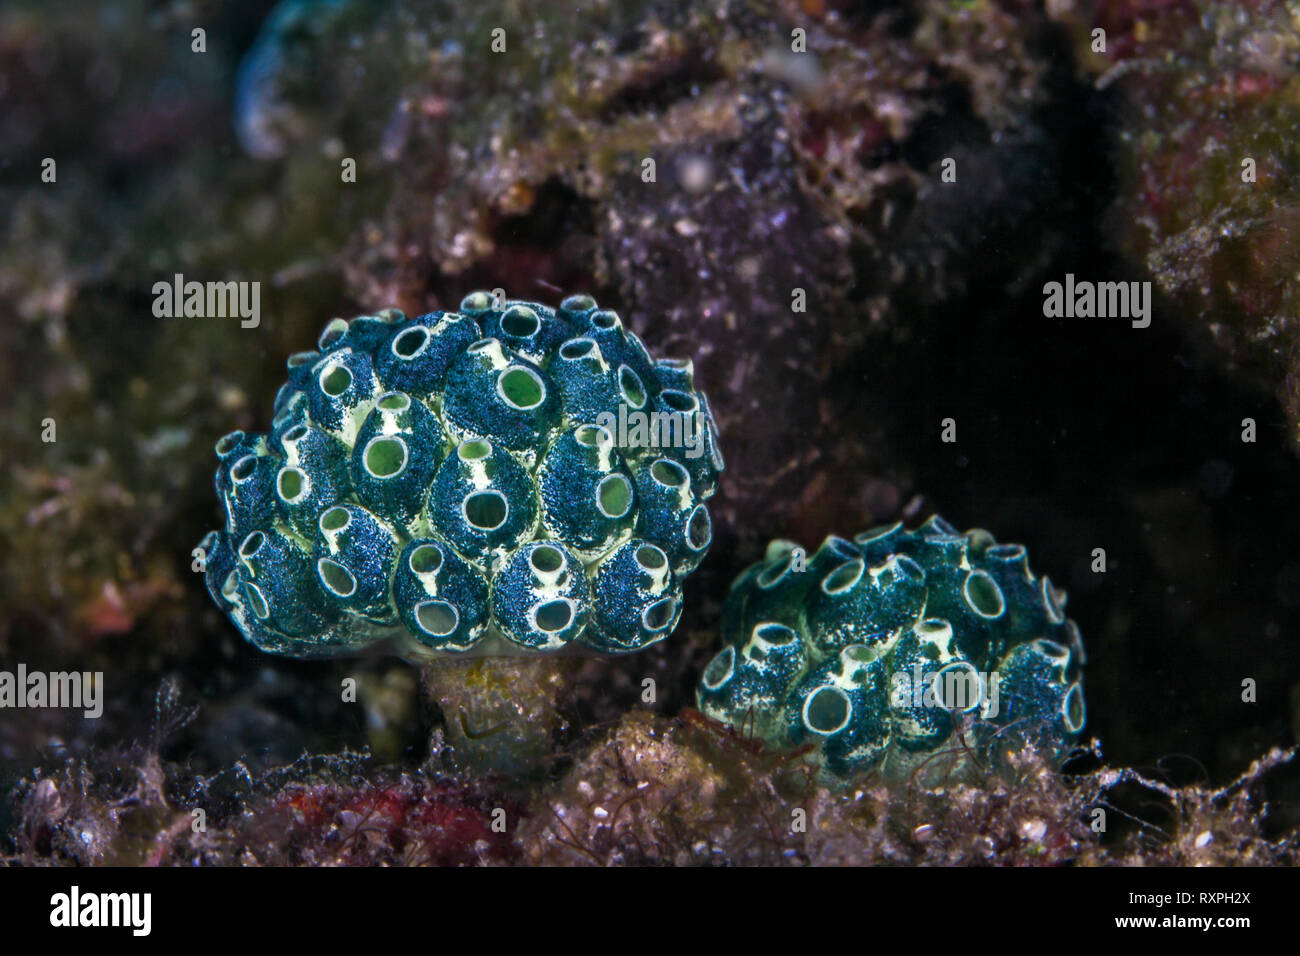 Lollipop Manteltiere (Nephtheis Fascicularis), Kolonien von Blue Manteltiere wächst an einem Stiel. Lembeh Straits, Indonesien. Stockfoto